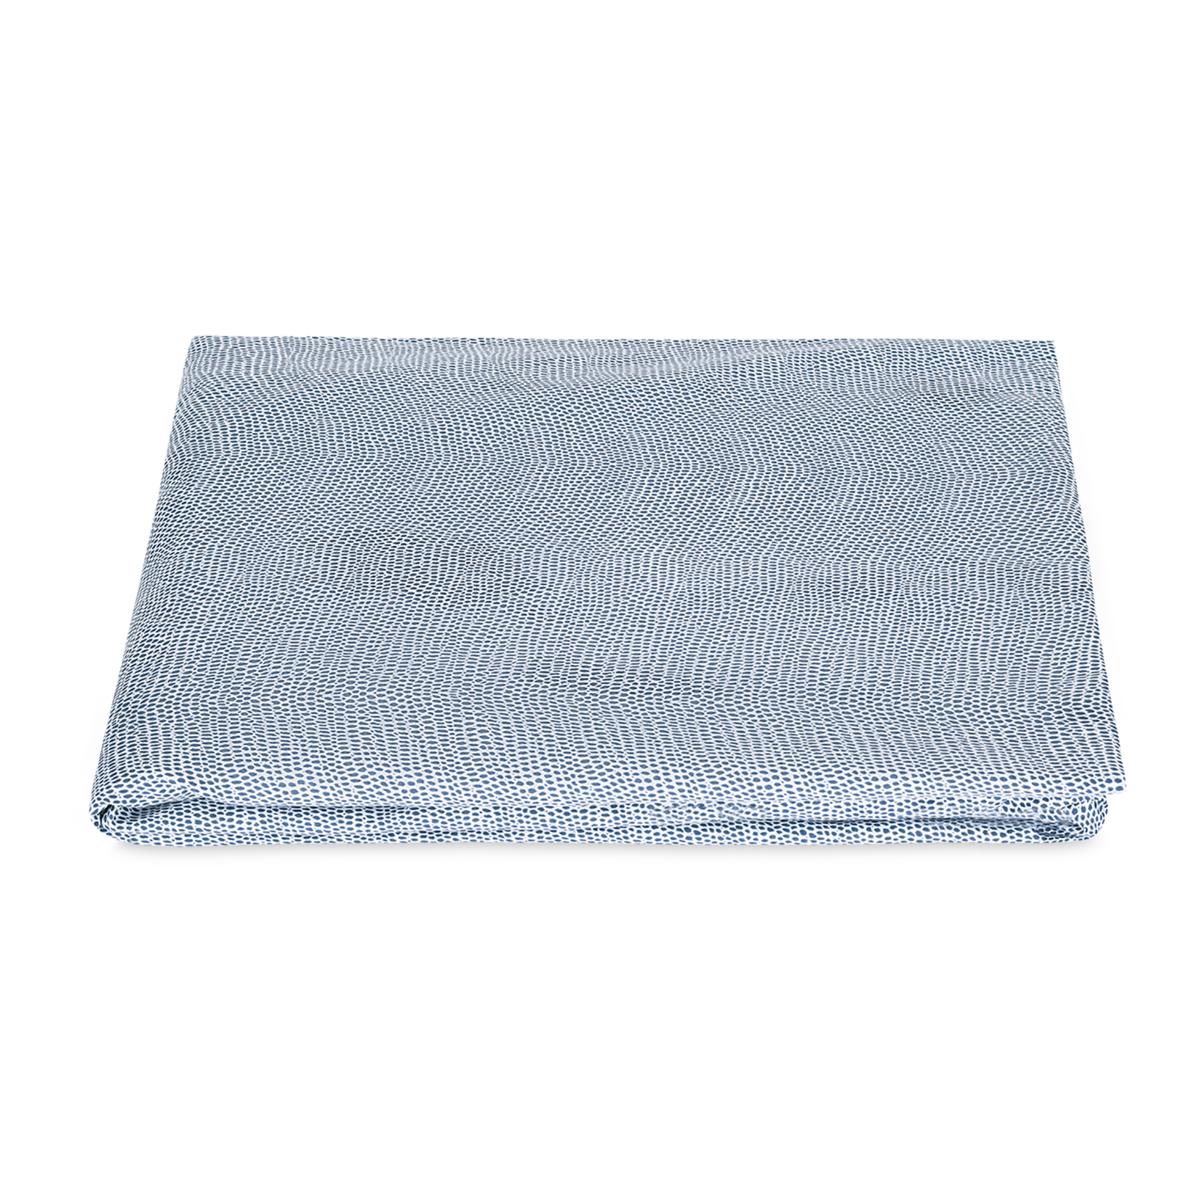 Folded Fitted Sheet of Steel Blue Matouk Jasper Bedding